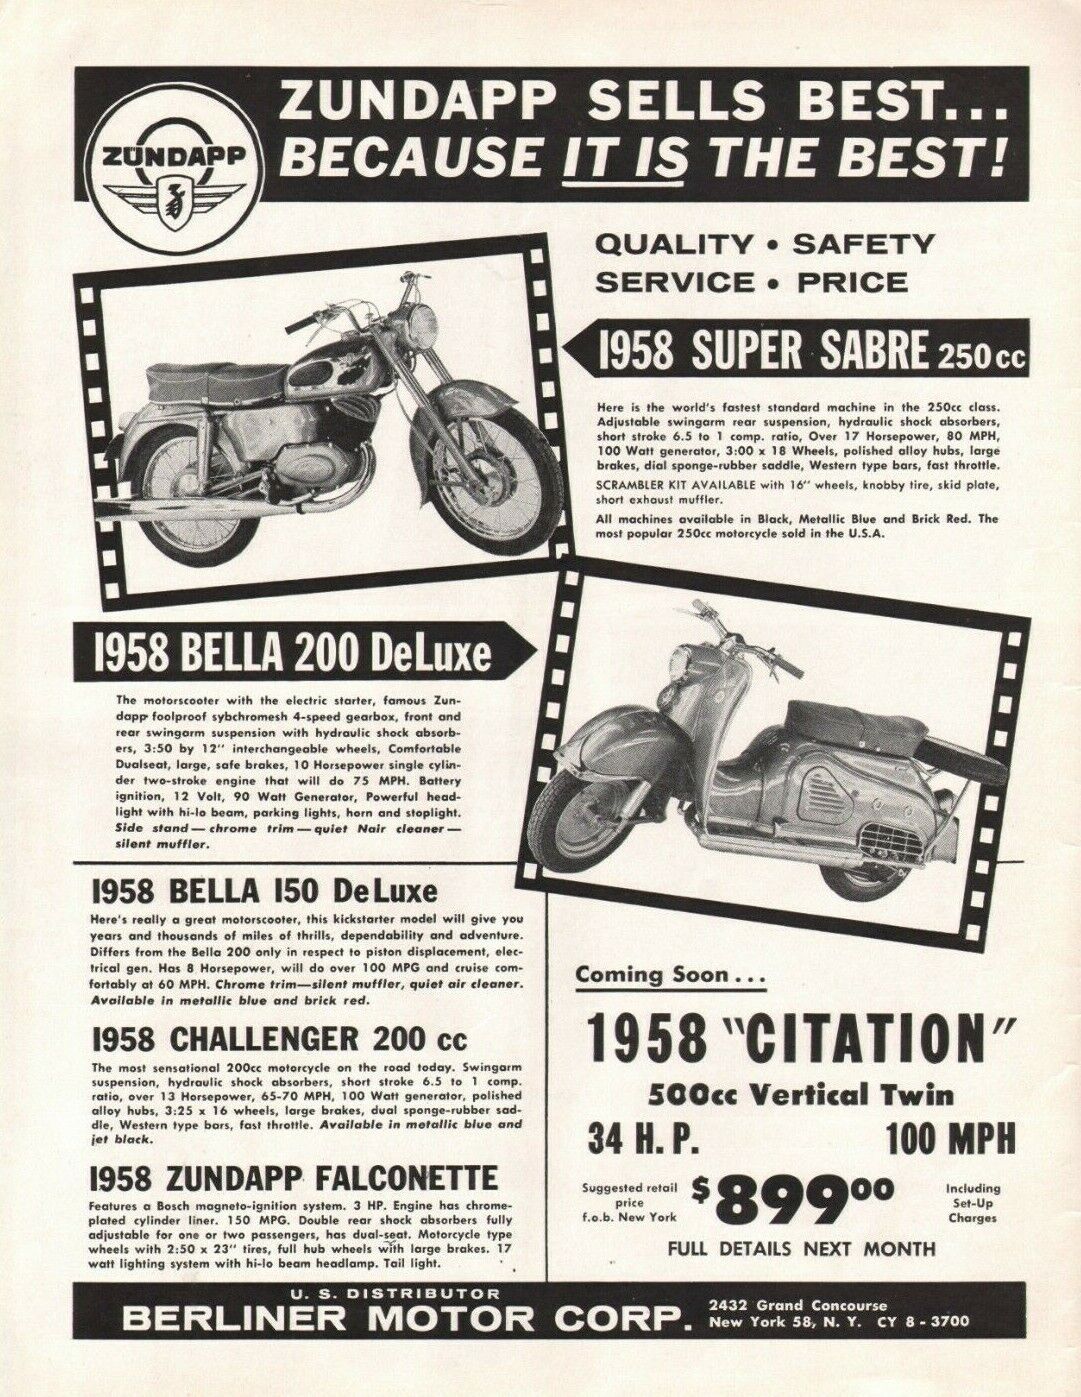 1958 Zundapp Super Sabre 250cc / Bella 200 Deluxe - Vintage Motorcycle Ad